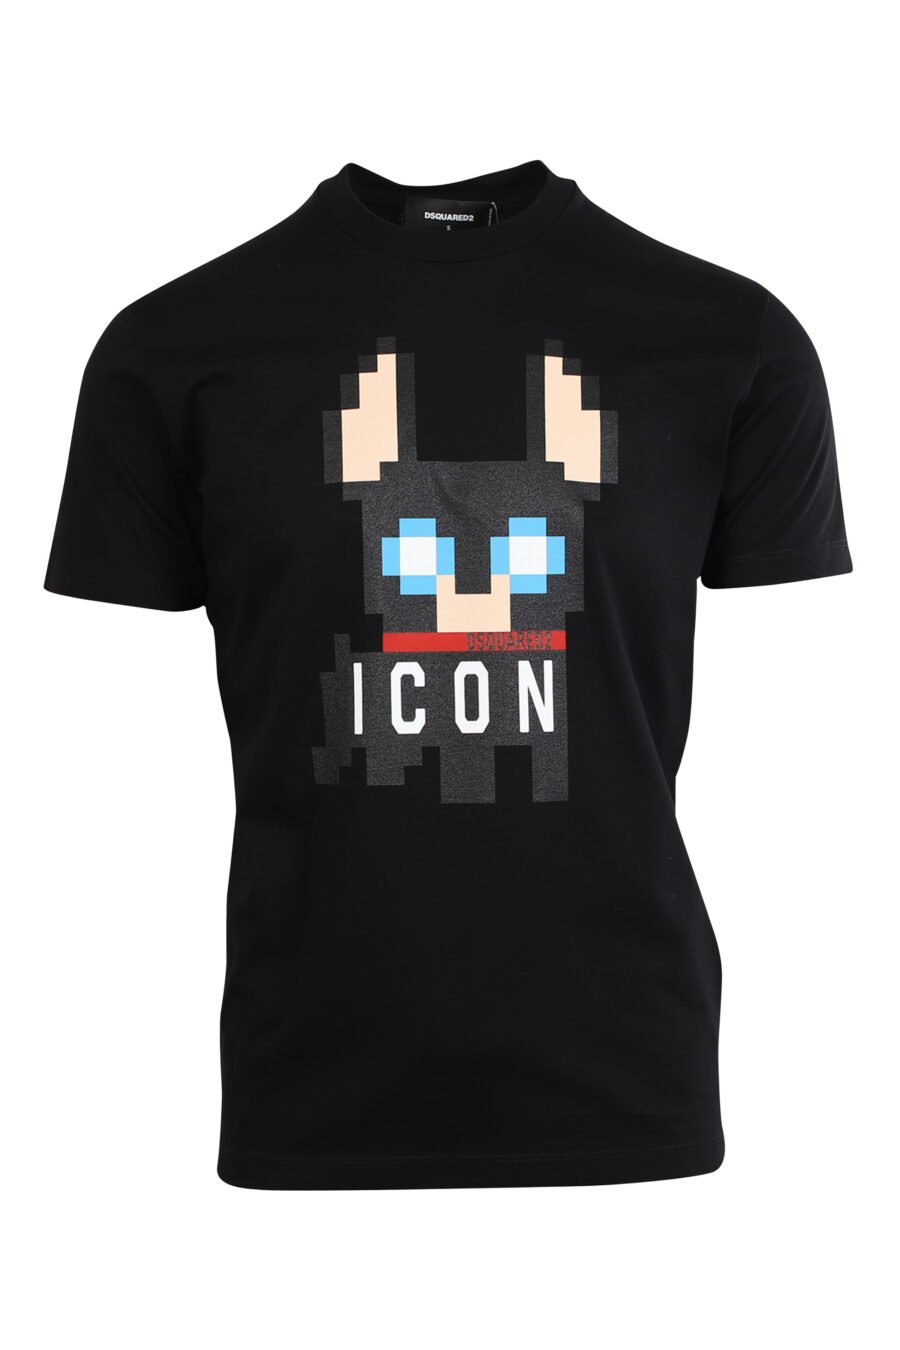 T-shirt preta com maxilogo de cão "Pixeled" - 8052134980774